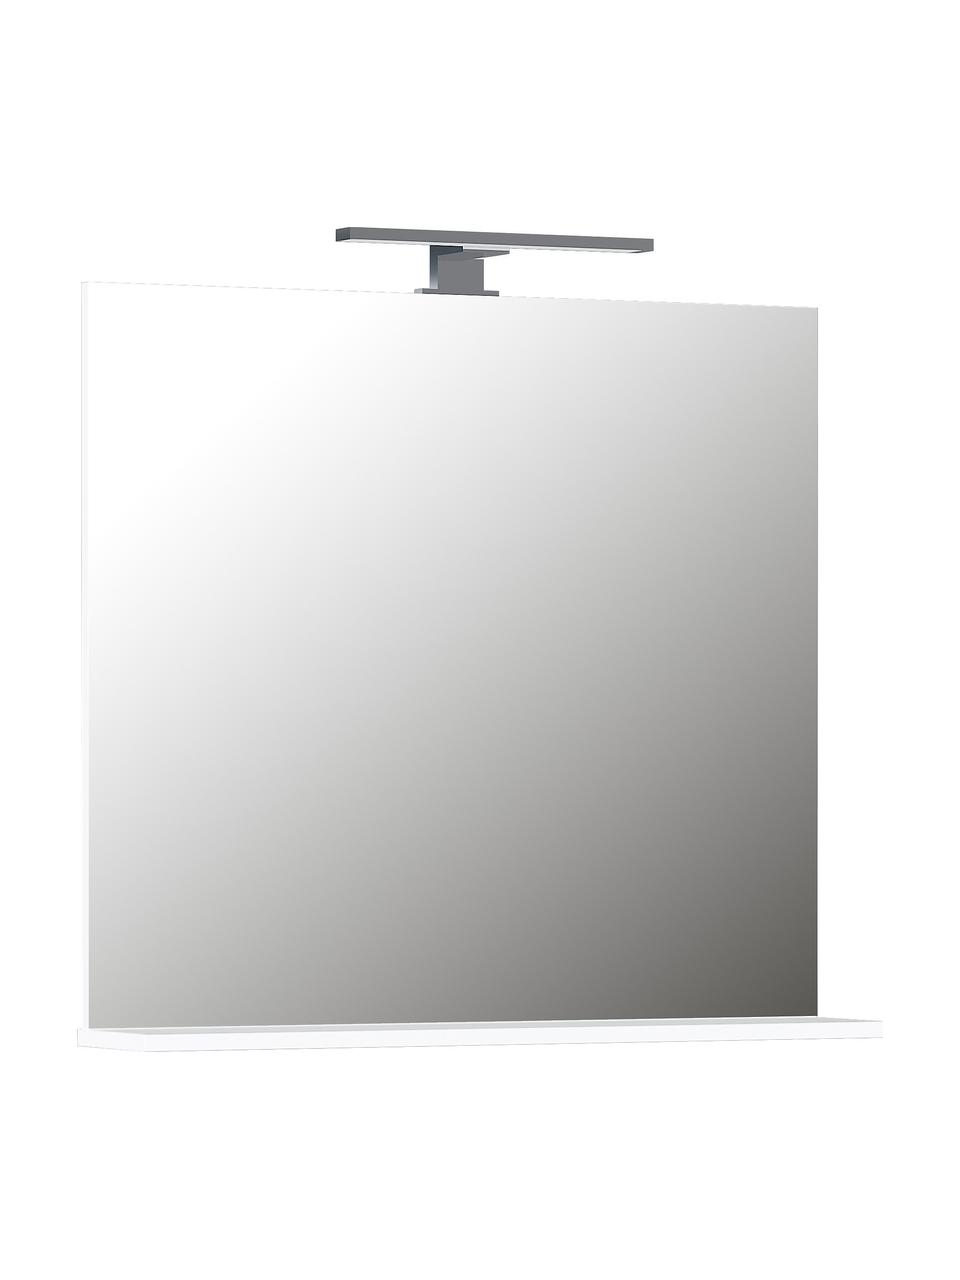 Wandspiegel Sara mit LED-Beleuchtung und Ablage, Ablage: Spanplatte, melaminharzbe, Spiegelfläche: Spiegelglas, Silberfarben, B 76 x H 75 cm